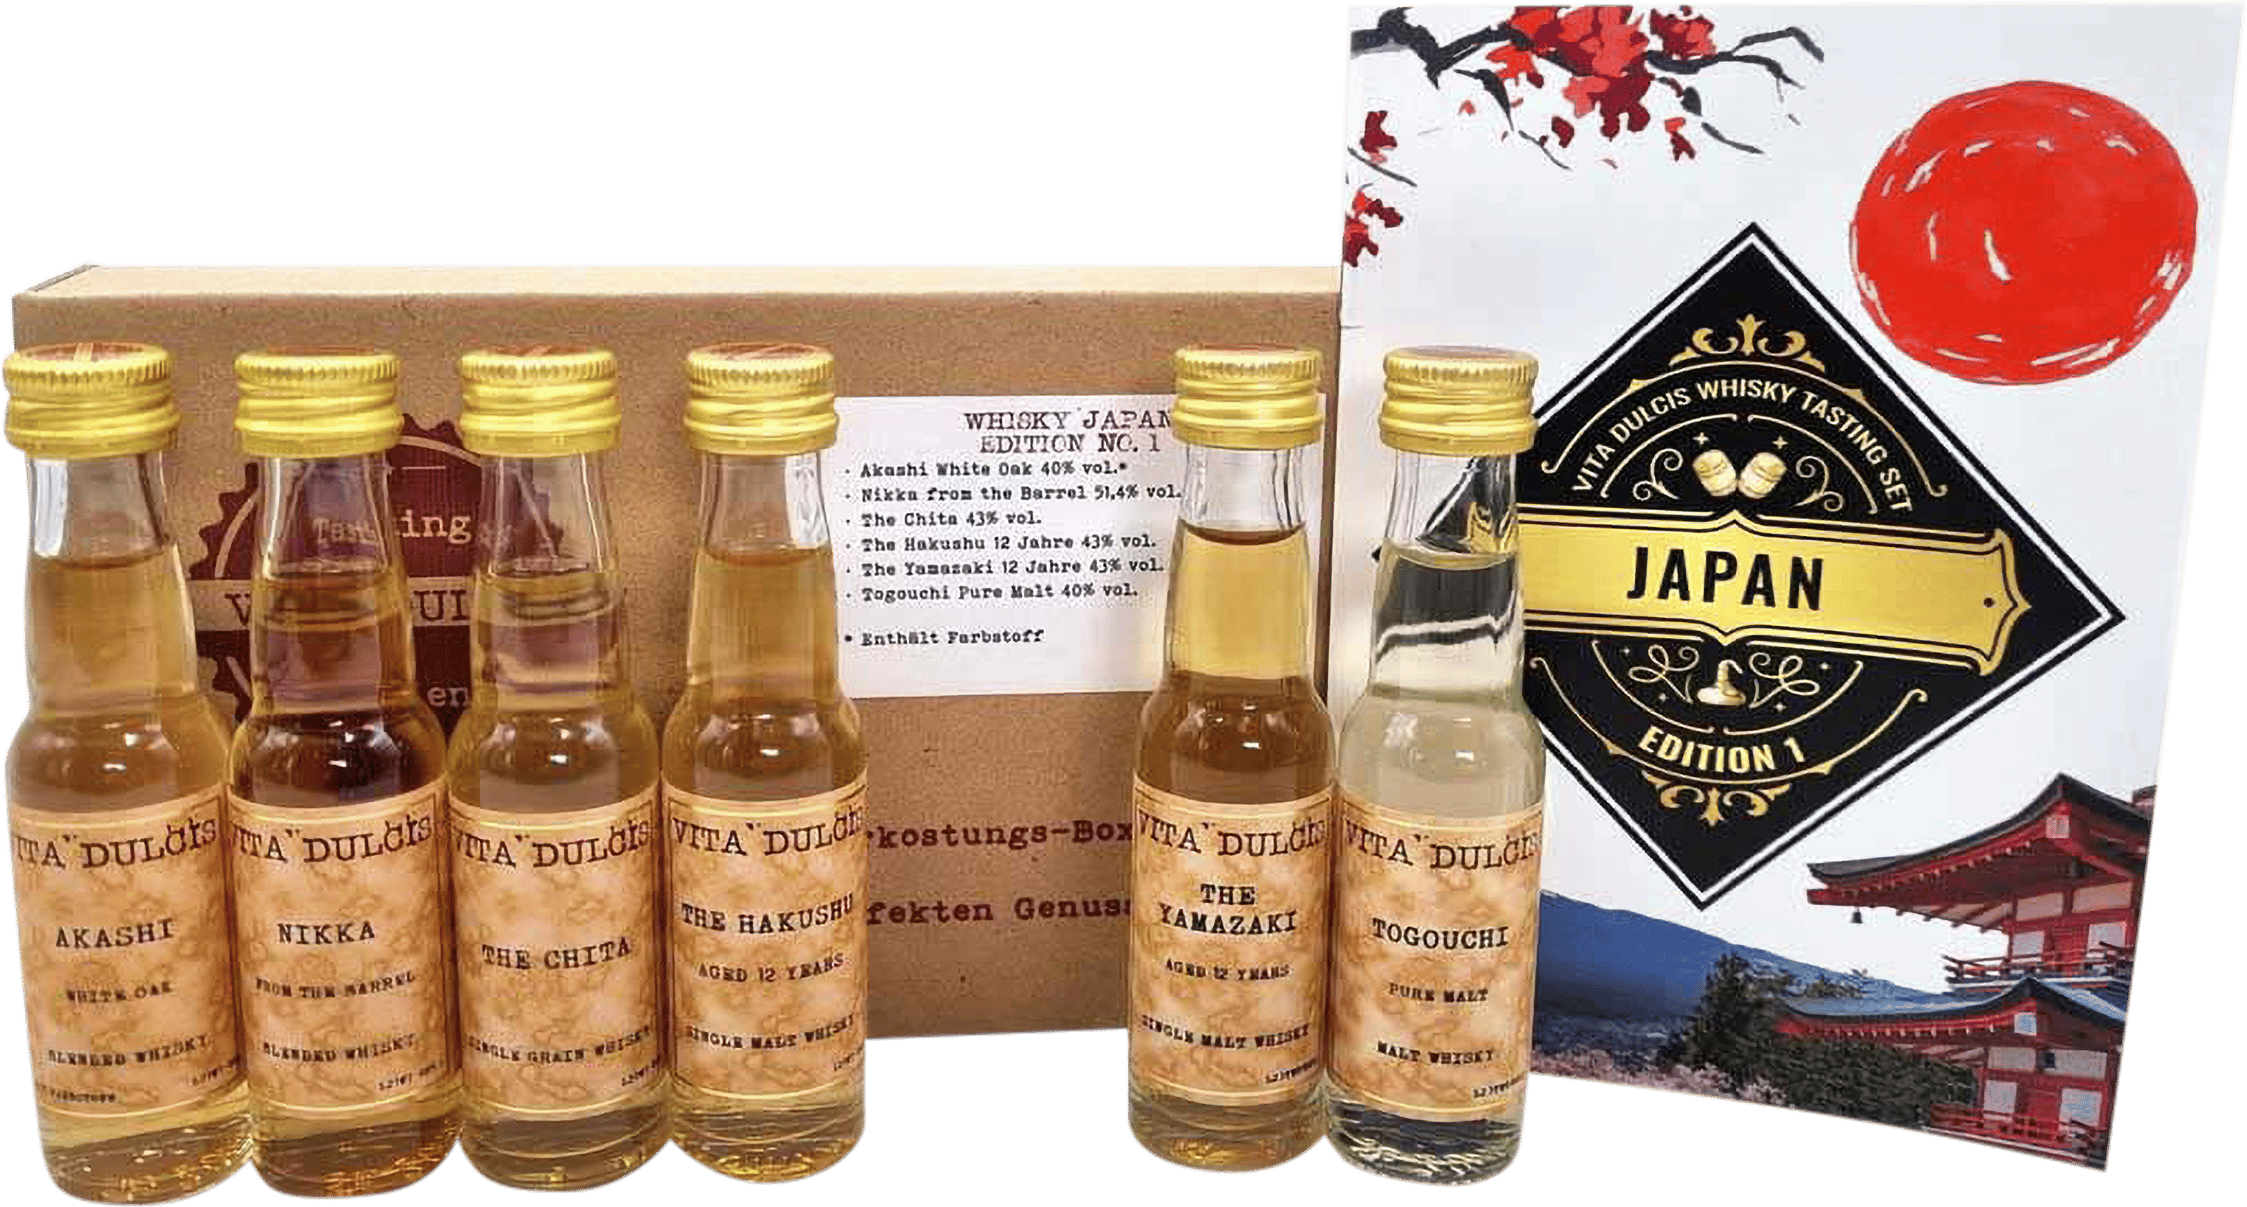 Whisky Tasting Box & | Honest Rare kaufen Japan